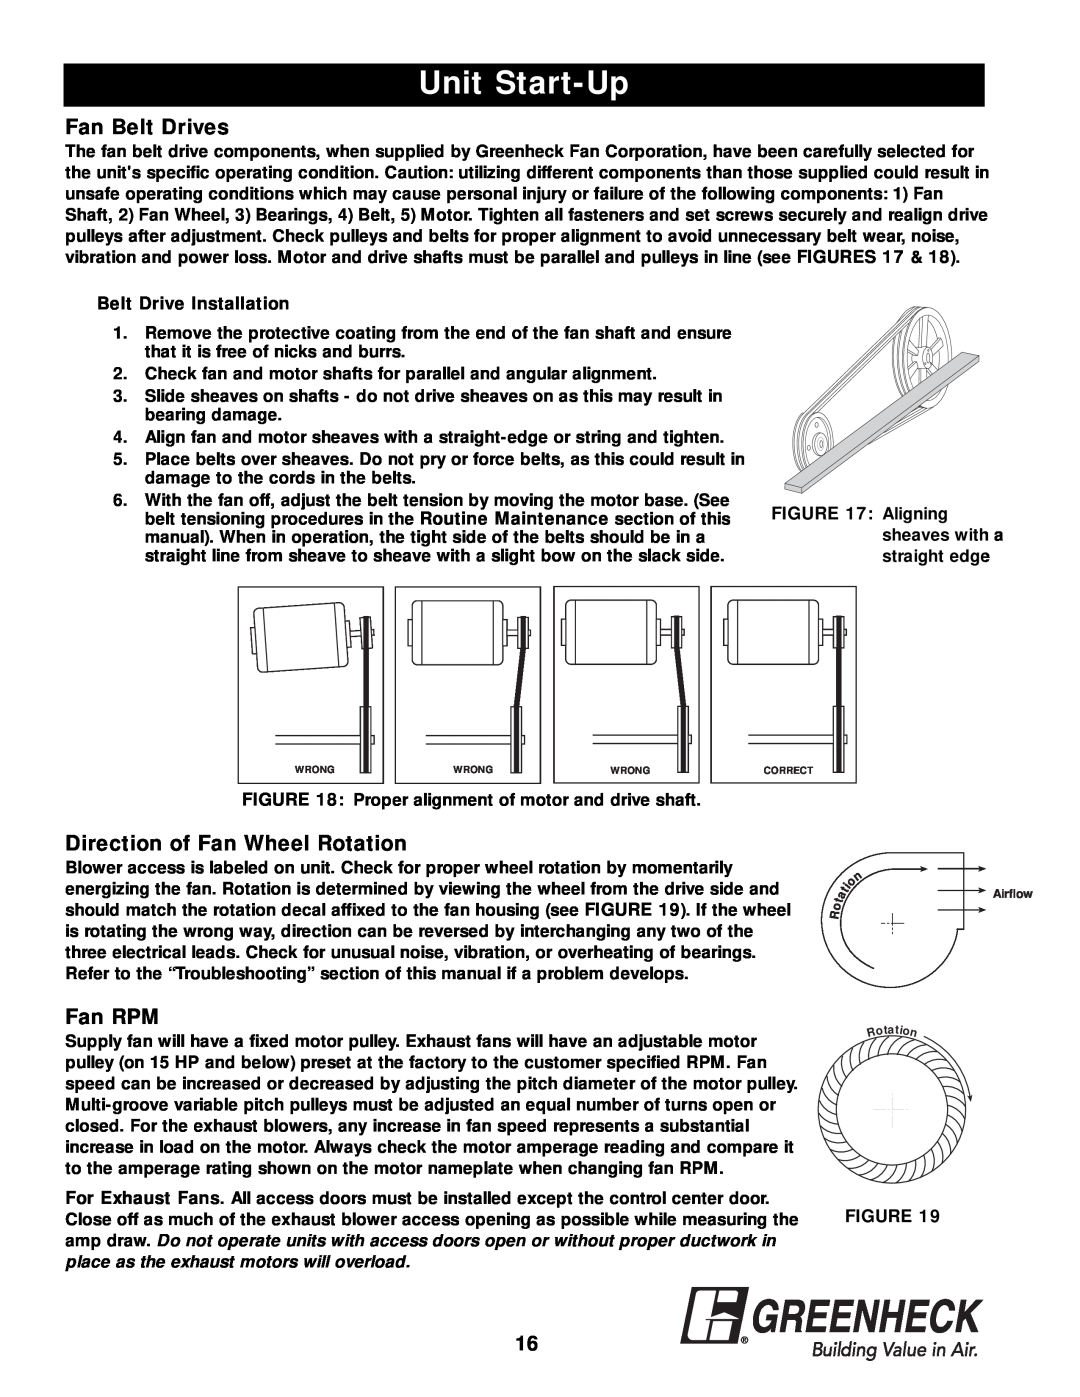 Greenheck Fan APEX-200 Fan Belt Drives, Direction of Fan Wheel Rotation, Fan RPM, Unit Start-Up, Belt Drive Installation 